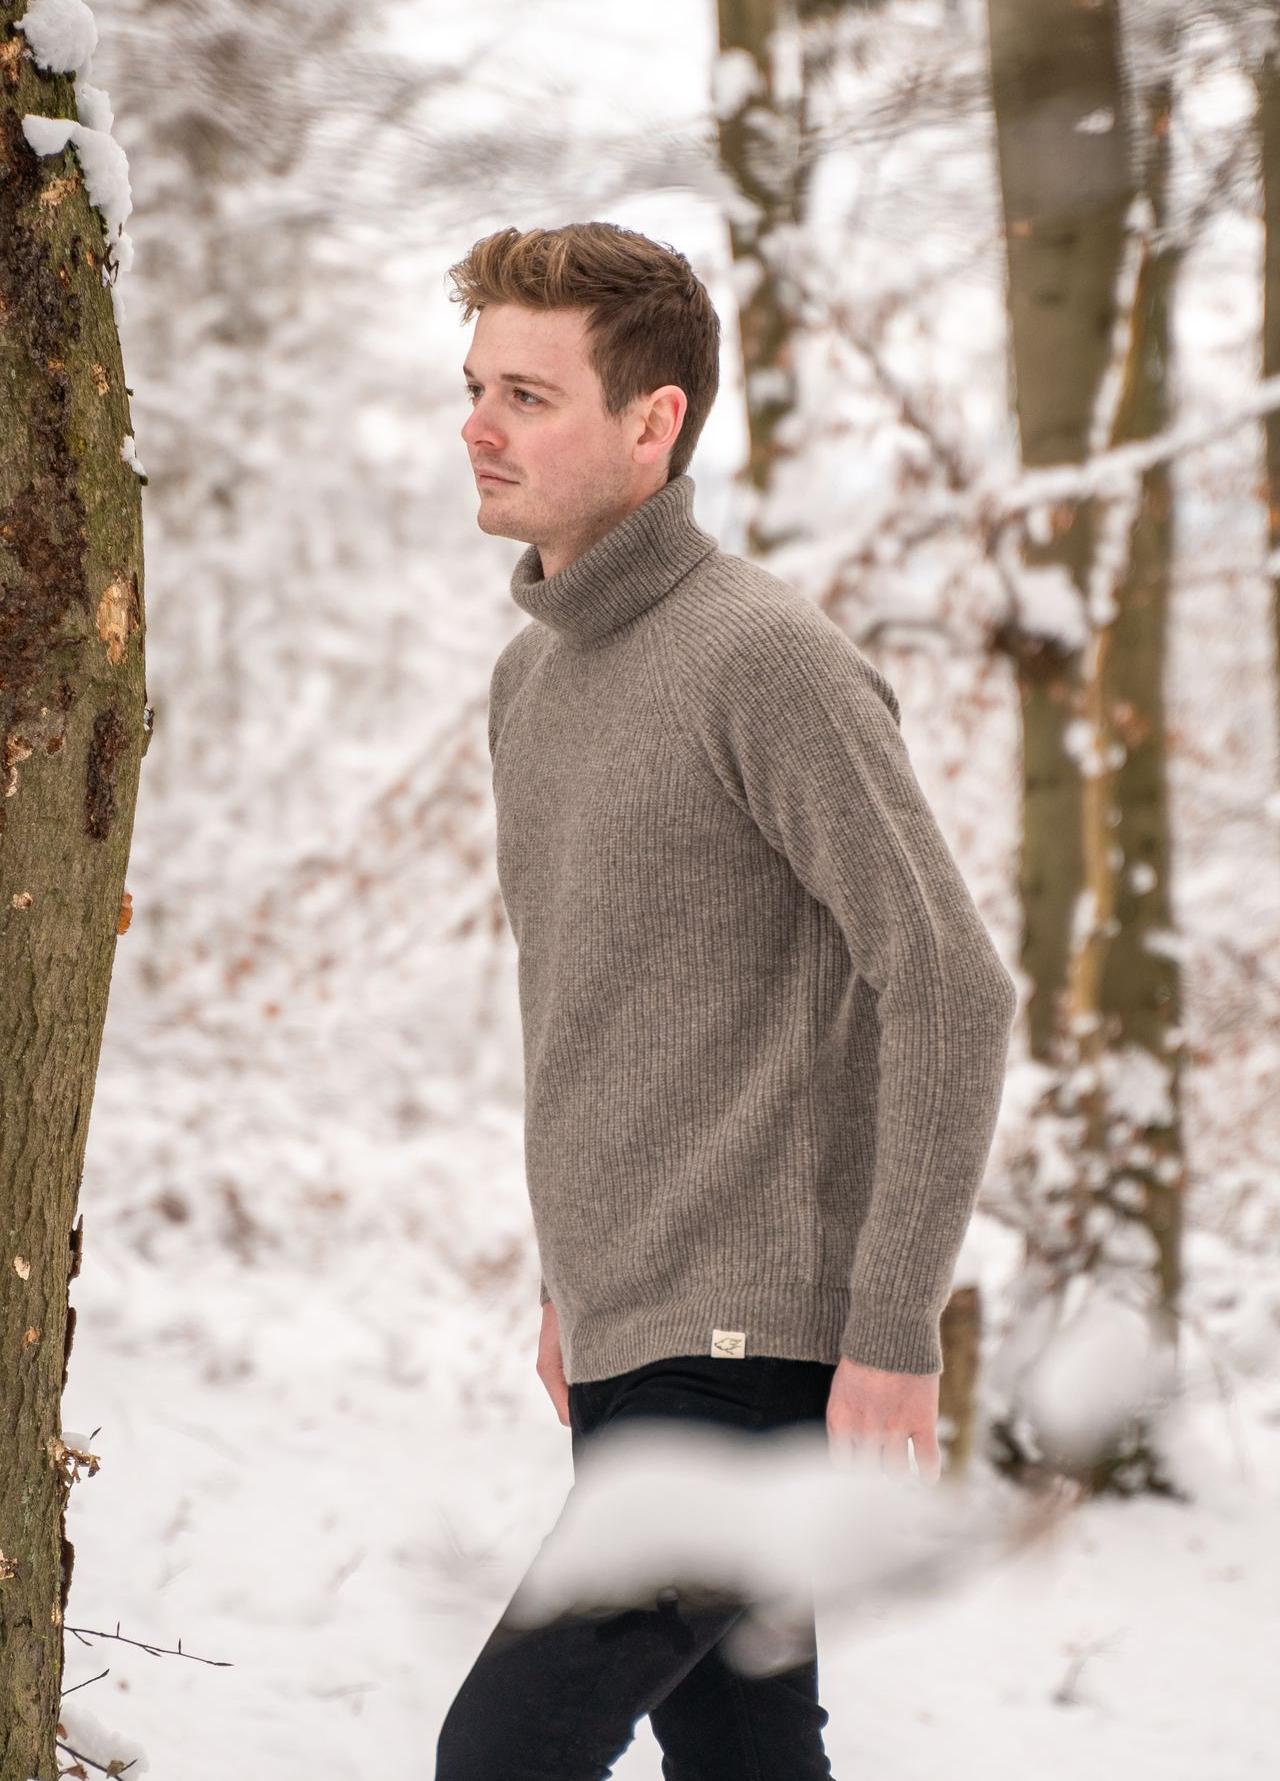 Ein Mann trägt einen grauen Rollkragenpullover und läuft durch Schnee im Wald